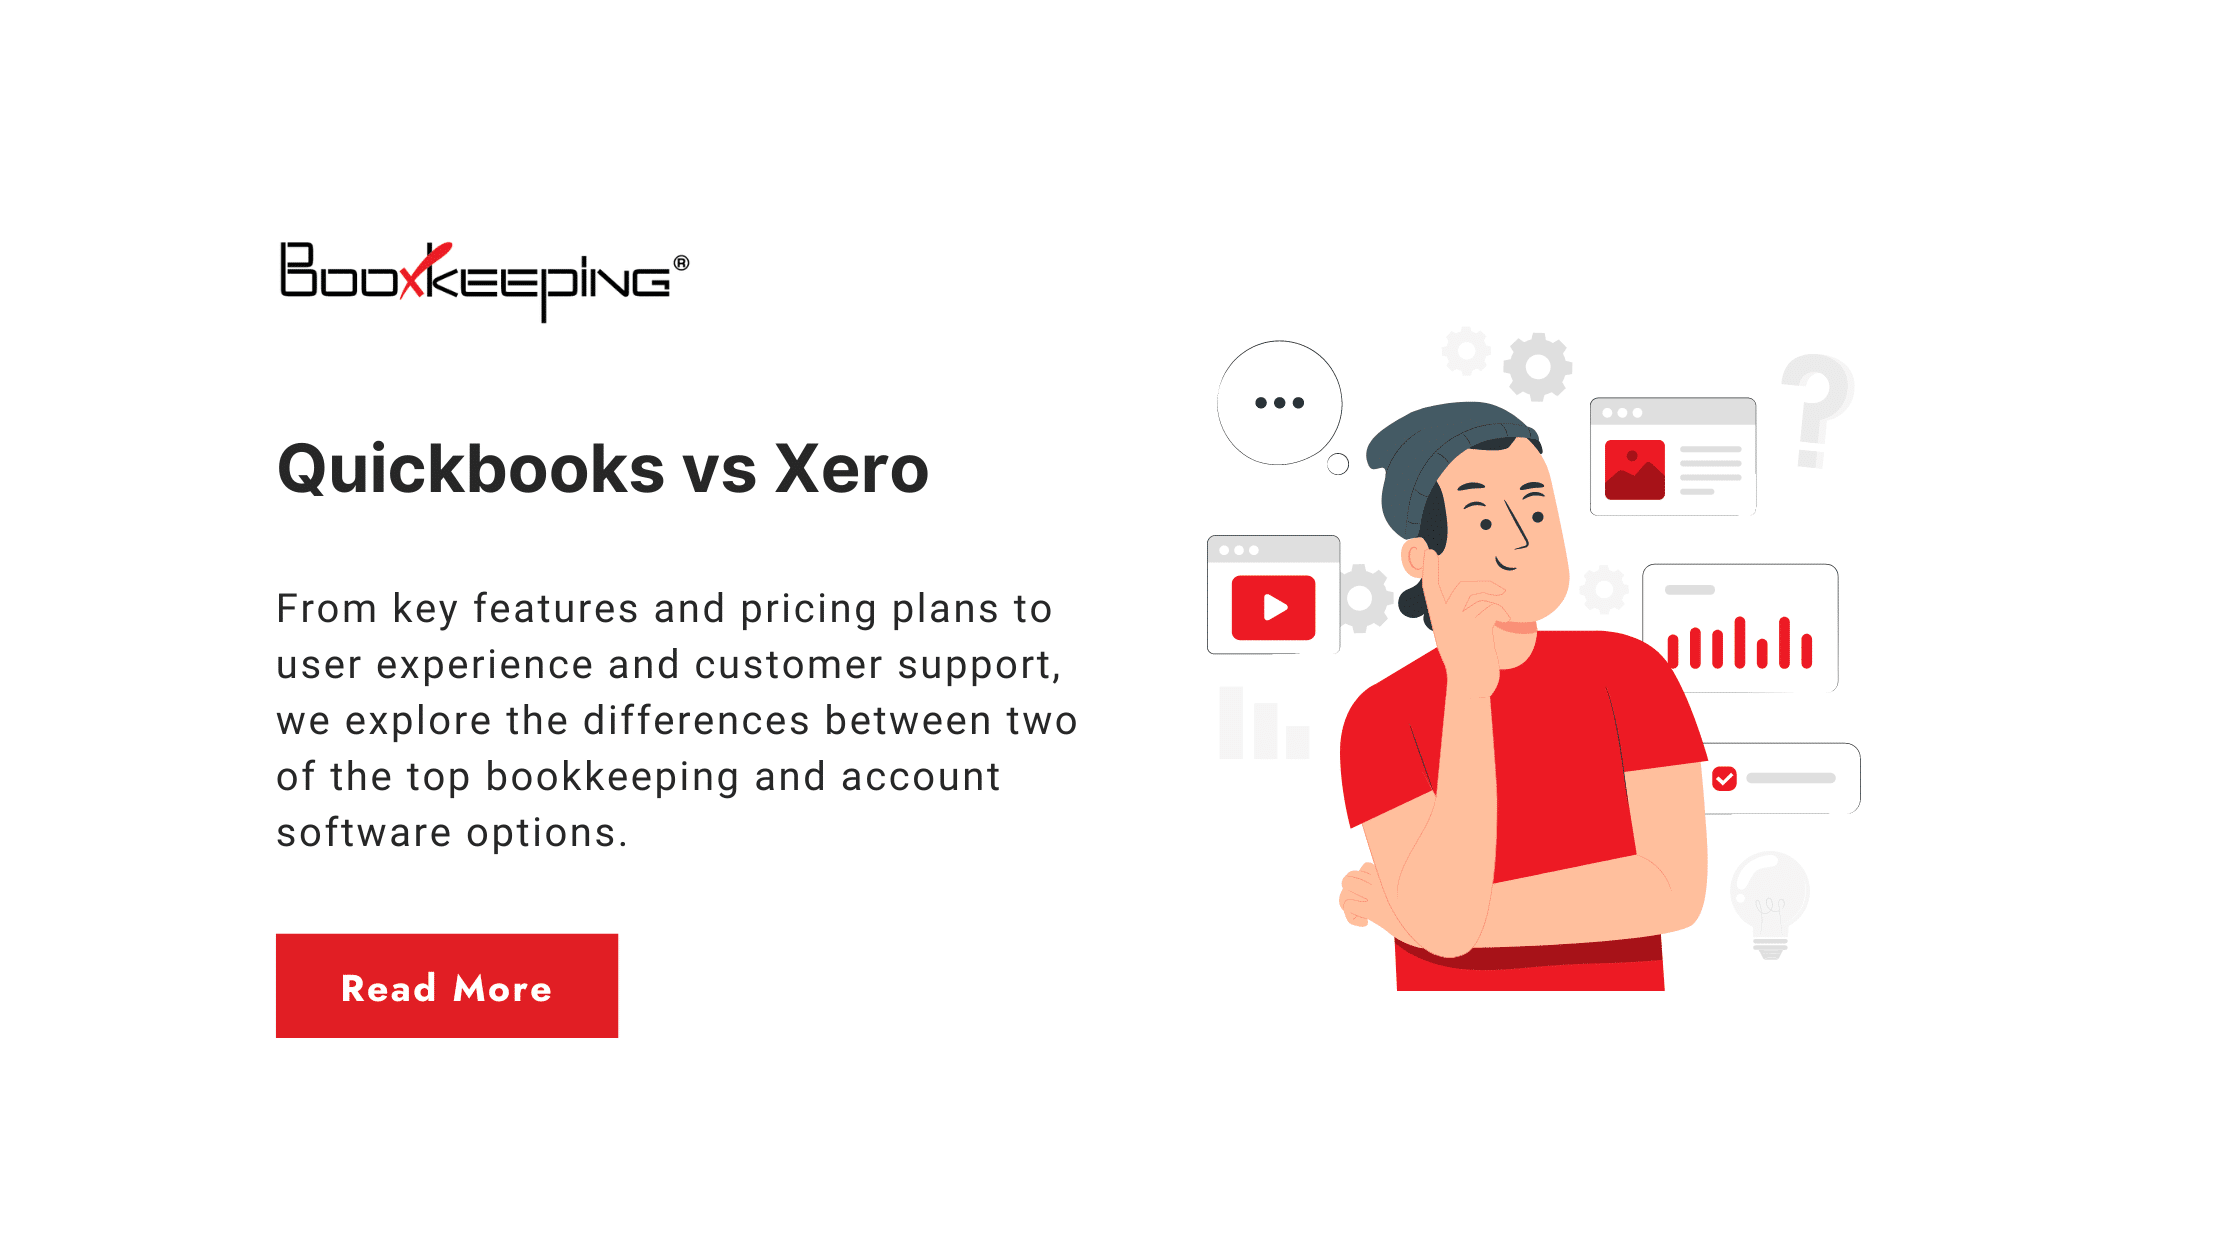 quickbooks vs xero comparison guide introduction